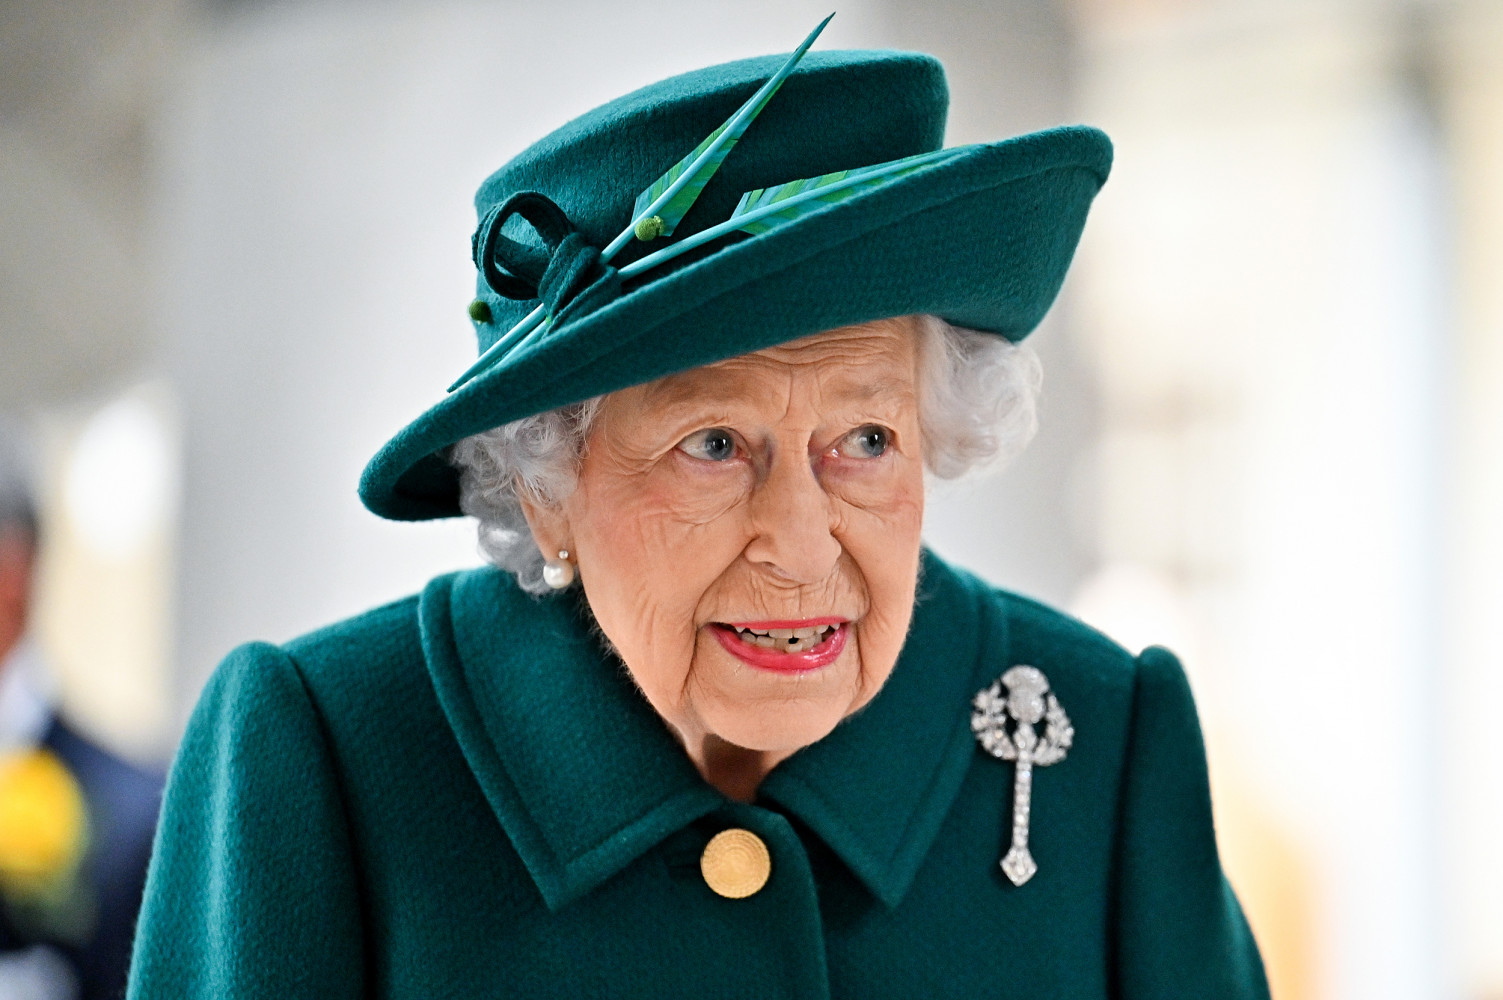 Kraliçe Elizabeth anısına 23 milyon dolar değerinde dev madeni para tasarlandı